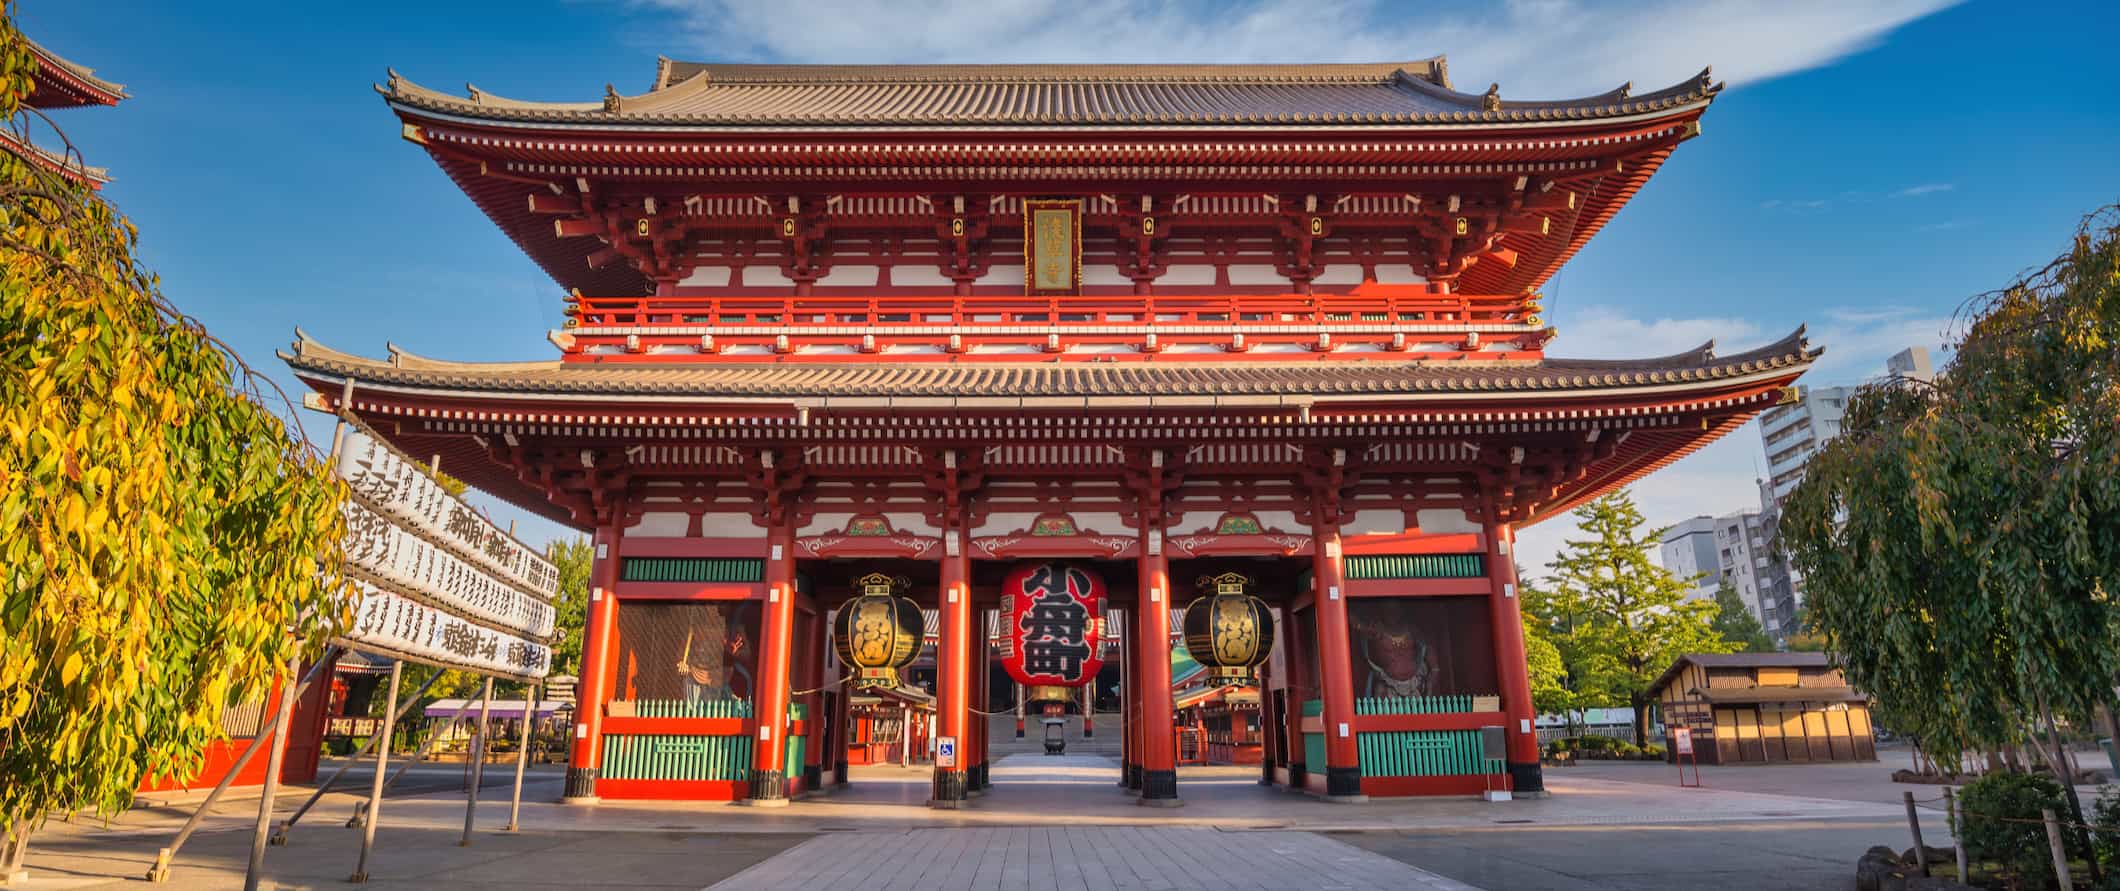 O imponente e colorido Templo Sensoji em Tóquio, Japão